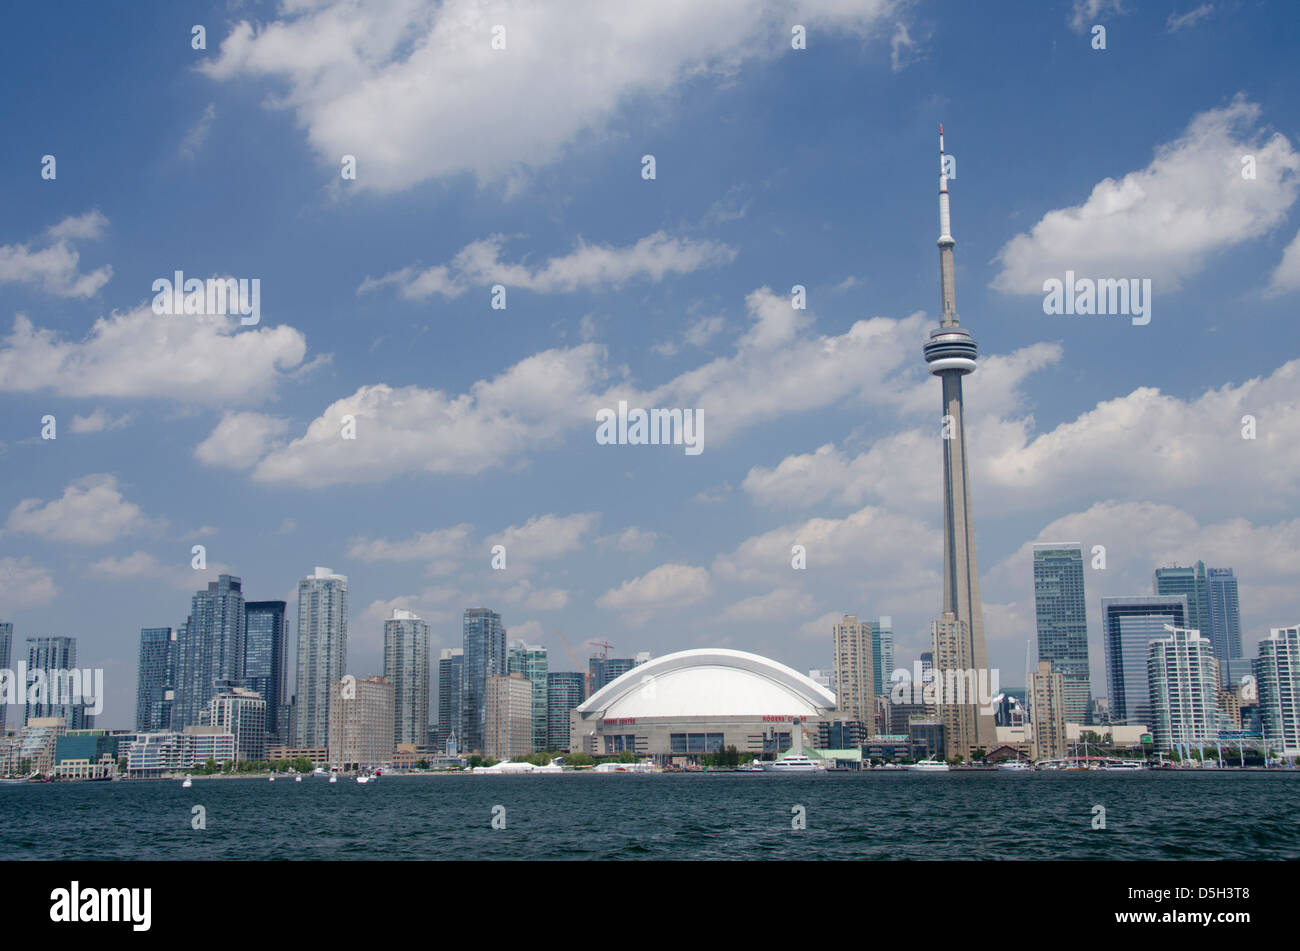 Le Canada, l'Ontario, Toronto. Le lac Ontario, vue sur la ville de l'emblématique Tour du CN et du Rogers Centre de croisière sur le port pittoresque. Banque D'Images